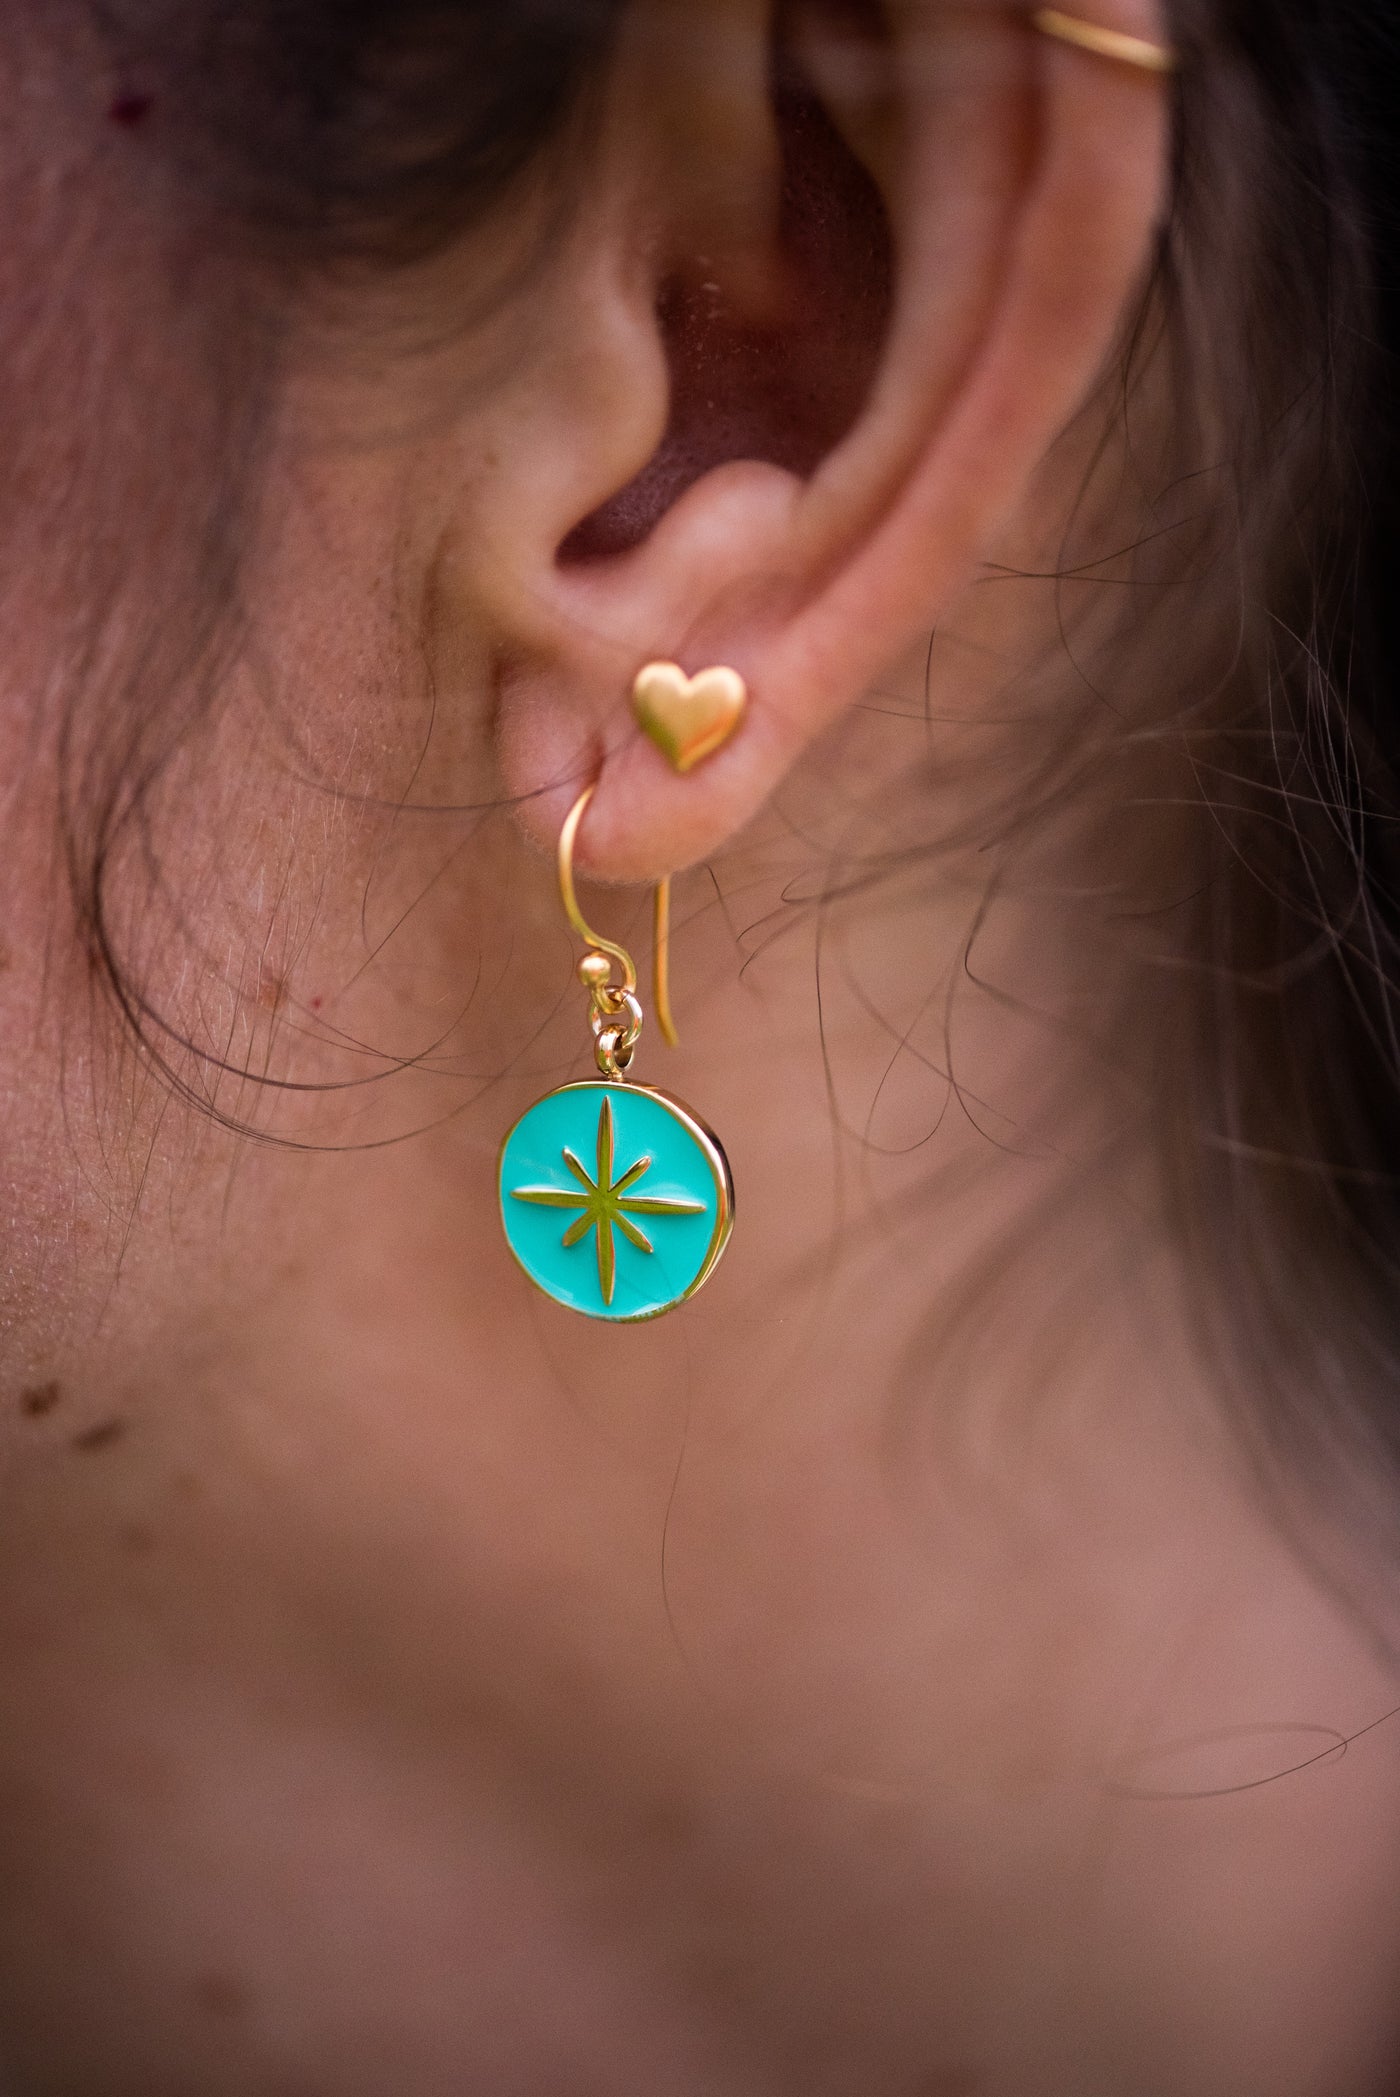 Enamel Charm Earrings - Aqua Compass